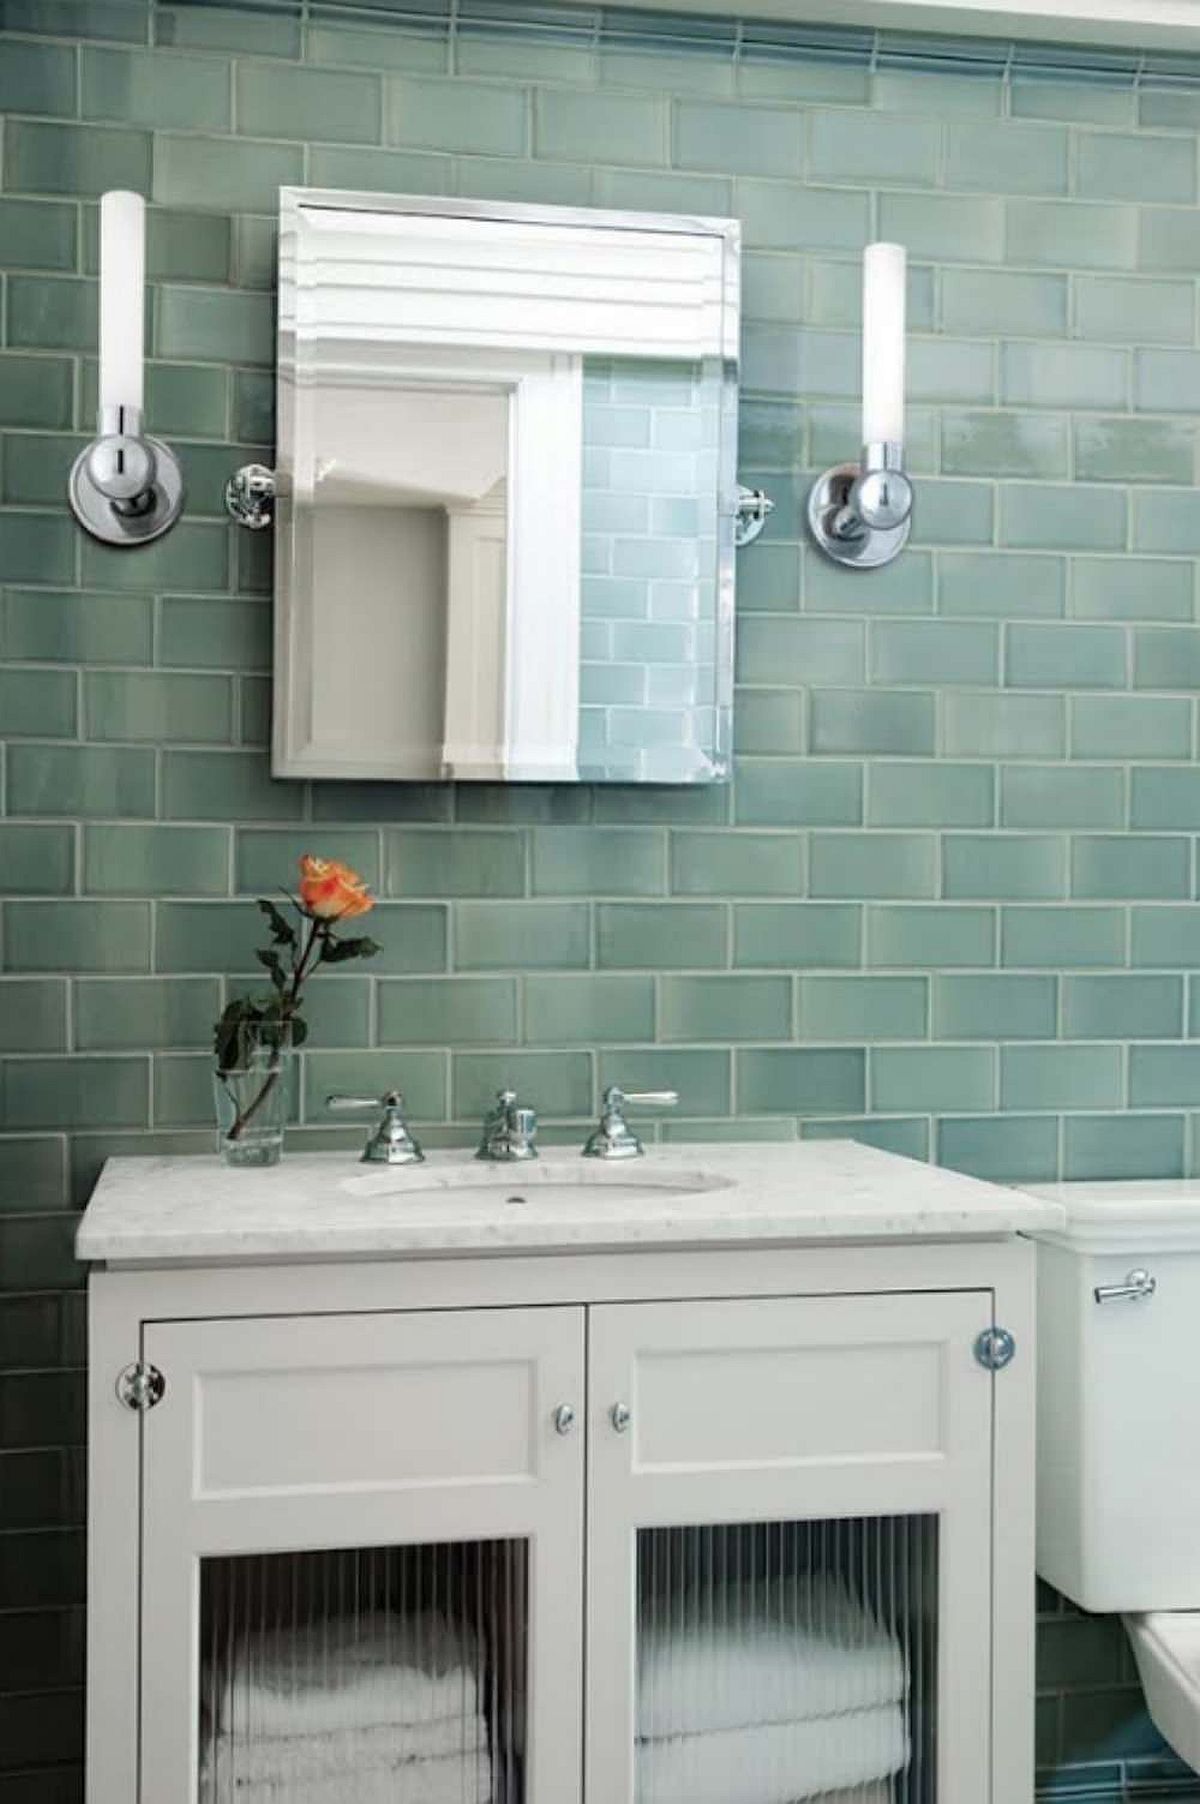 Gạch màu xanh lá cây cho phòng tắm hiện đại với bàn trang điểm màu trắng và hệ thống chiếu sáng thông minh